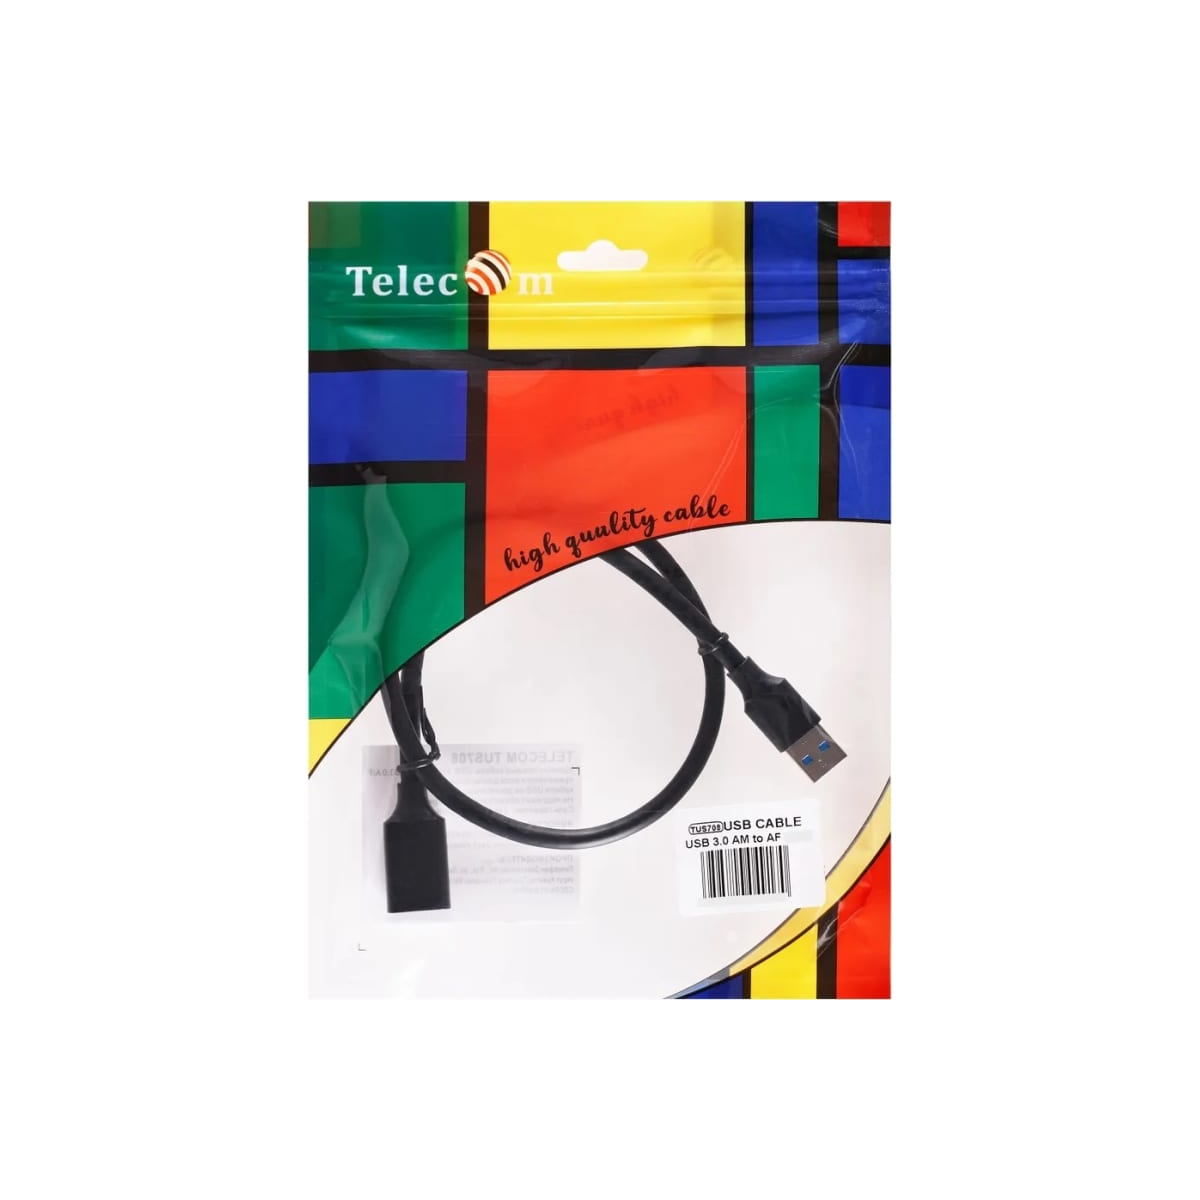 Кабель Telecom USB3.0 Am-Af 1m черный (TUS708-1M) кабель удлинительный usb3 0 am af 1m telecom черный tus708 1m vcom кабель telecom 1 м tus708 1m